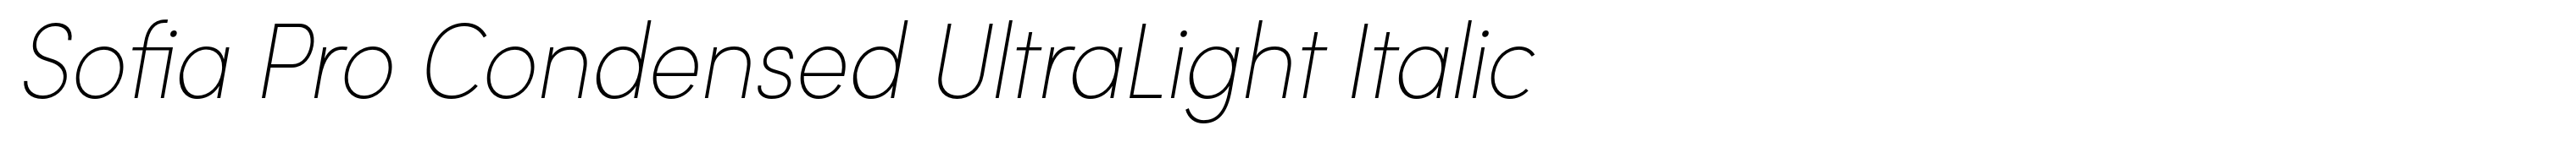 Sofia Pro Condensed UltraLight Italic